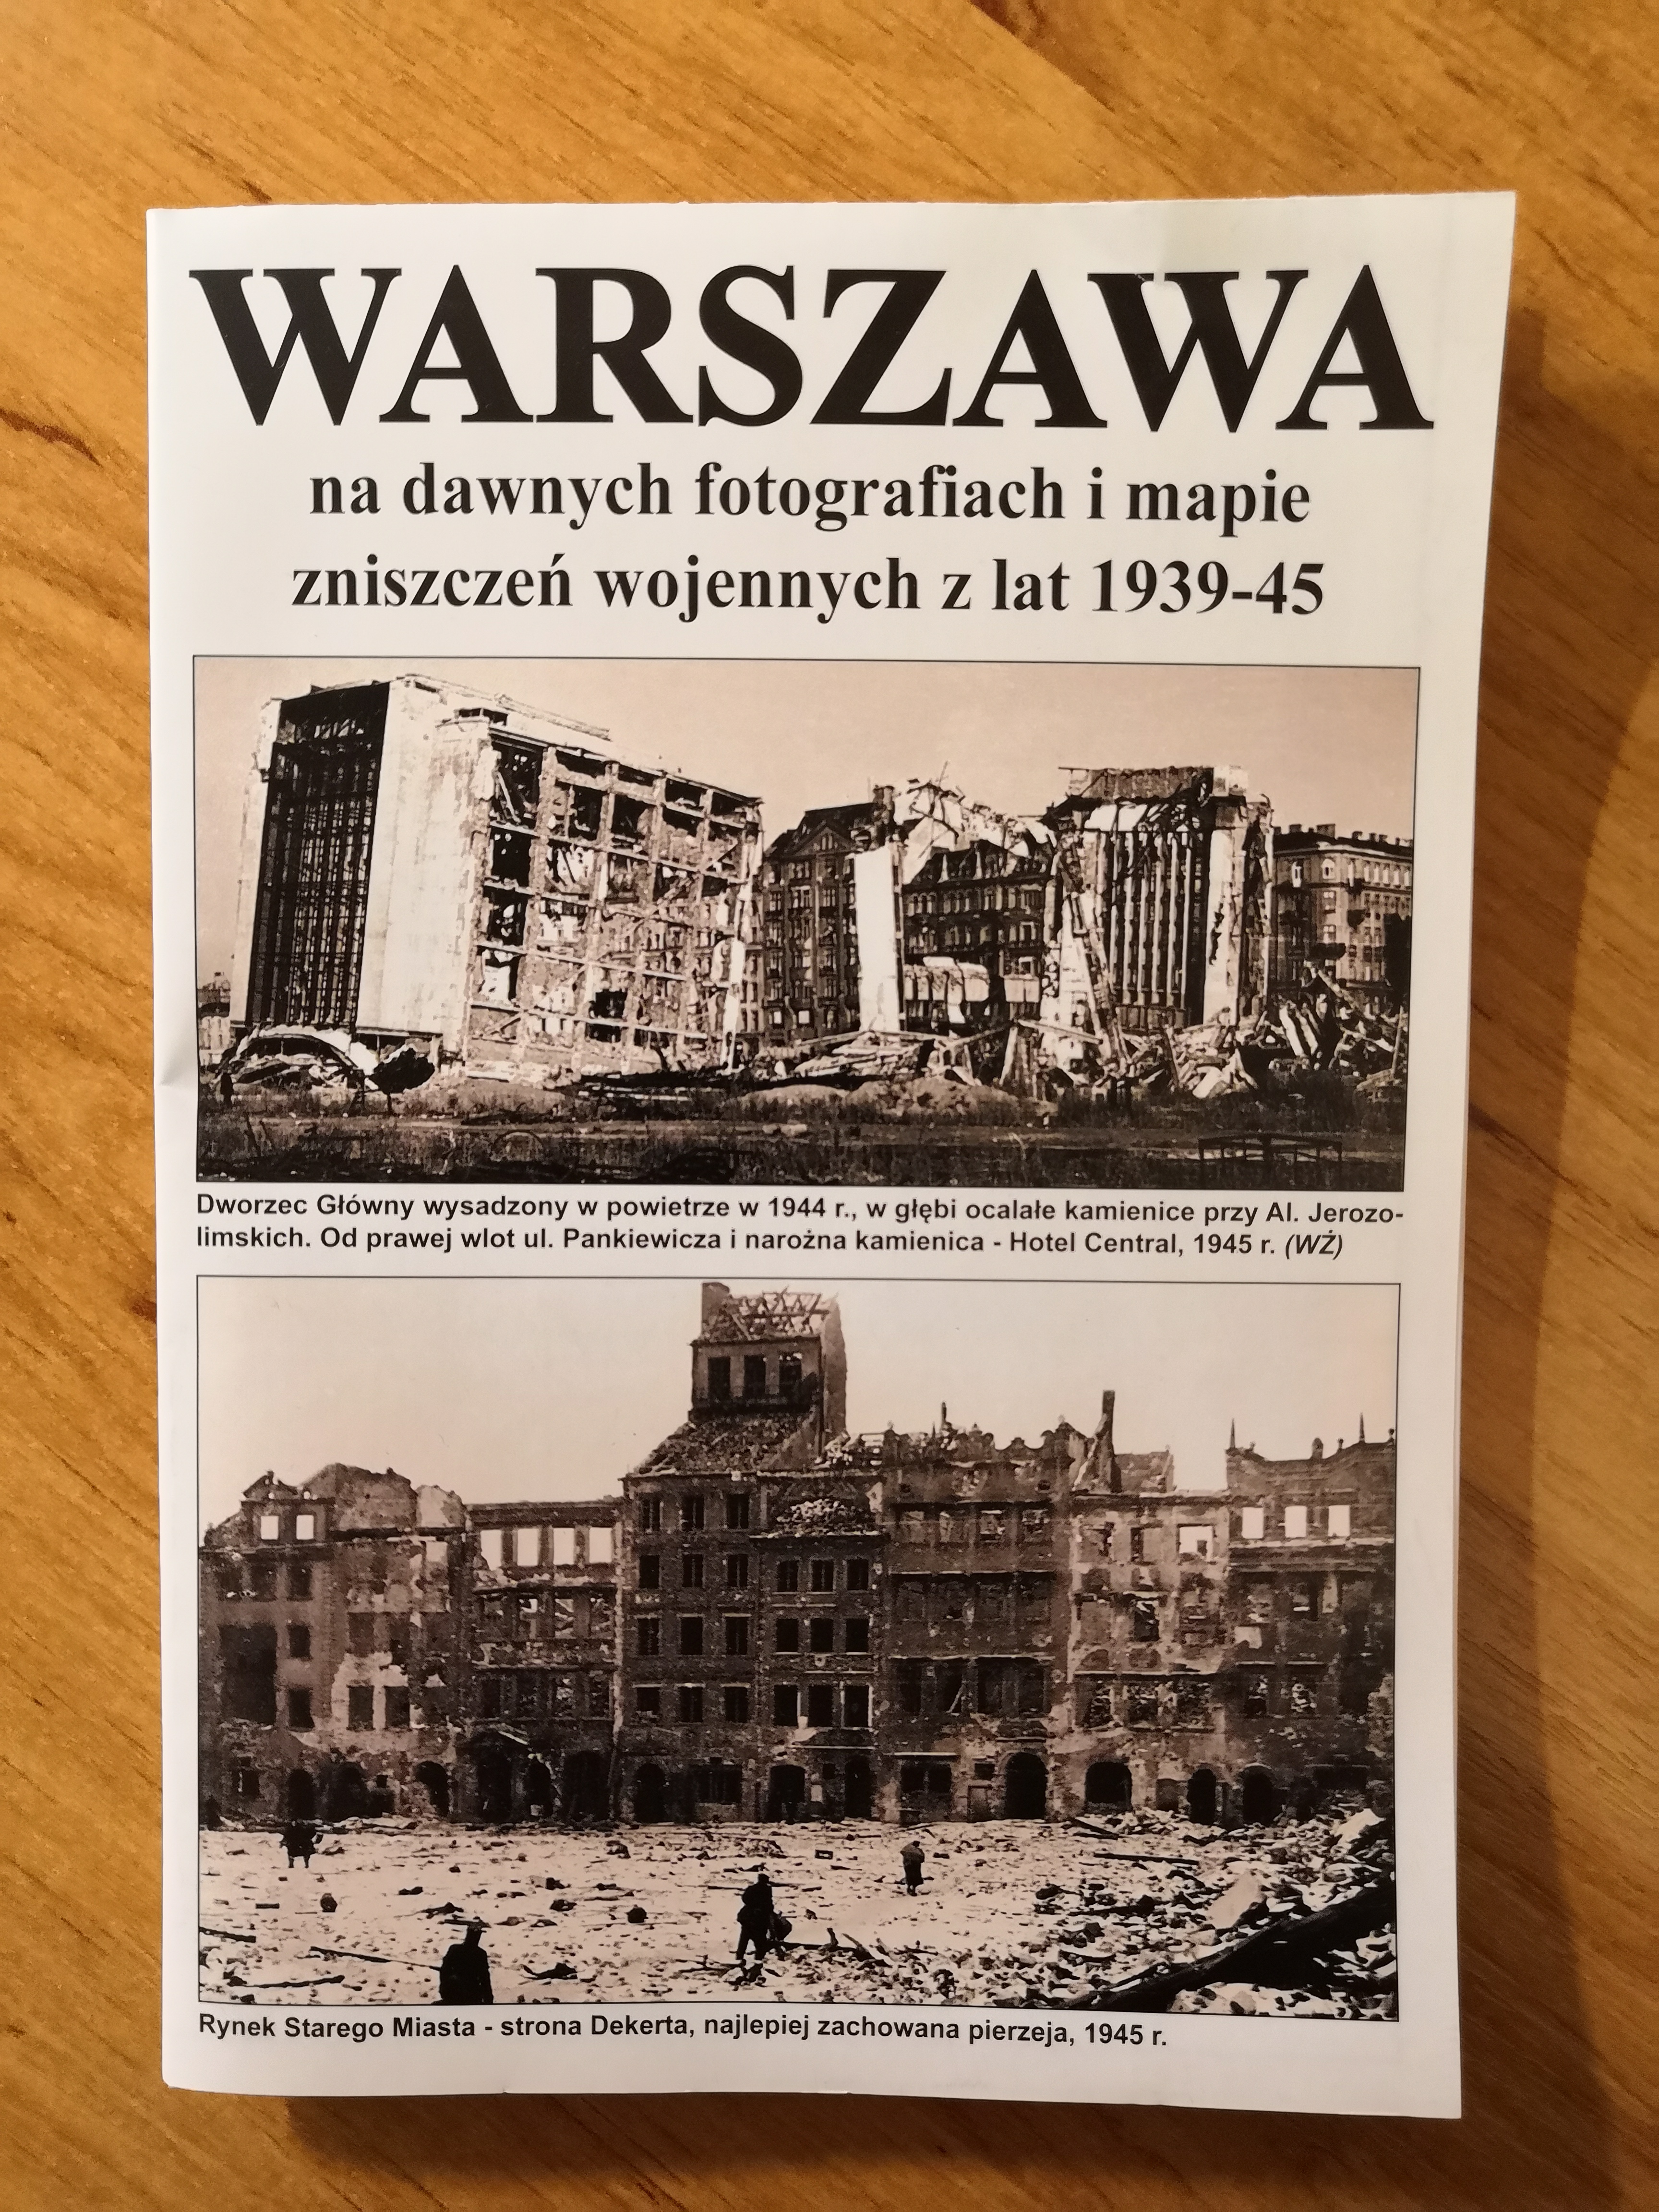 Warszawa na dawnych fotografiach i mapie zniszczeń wojennych z lat 1939-45 (J.A.Krawczyk)